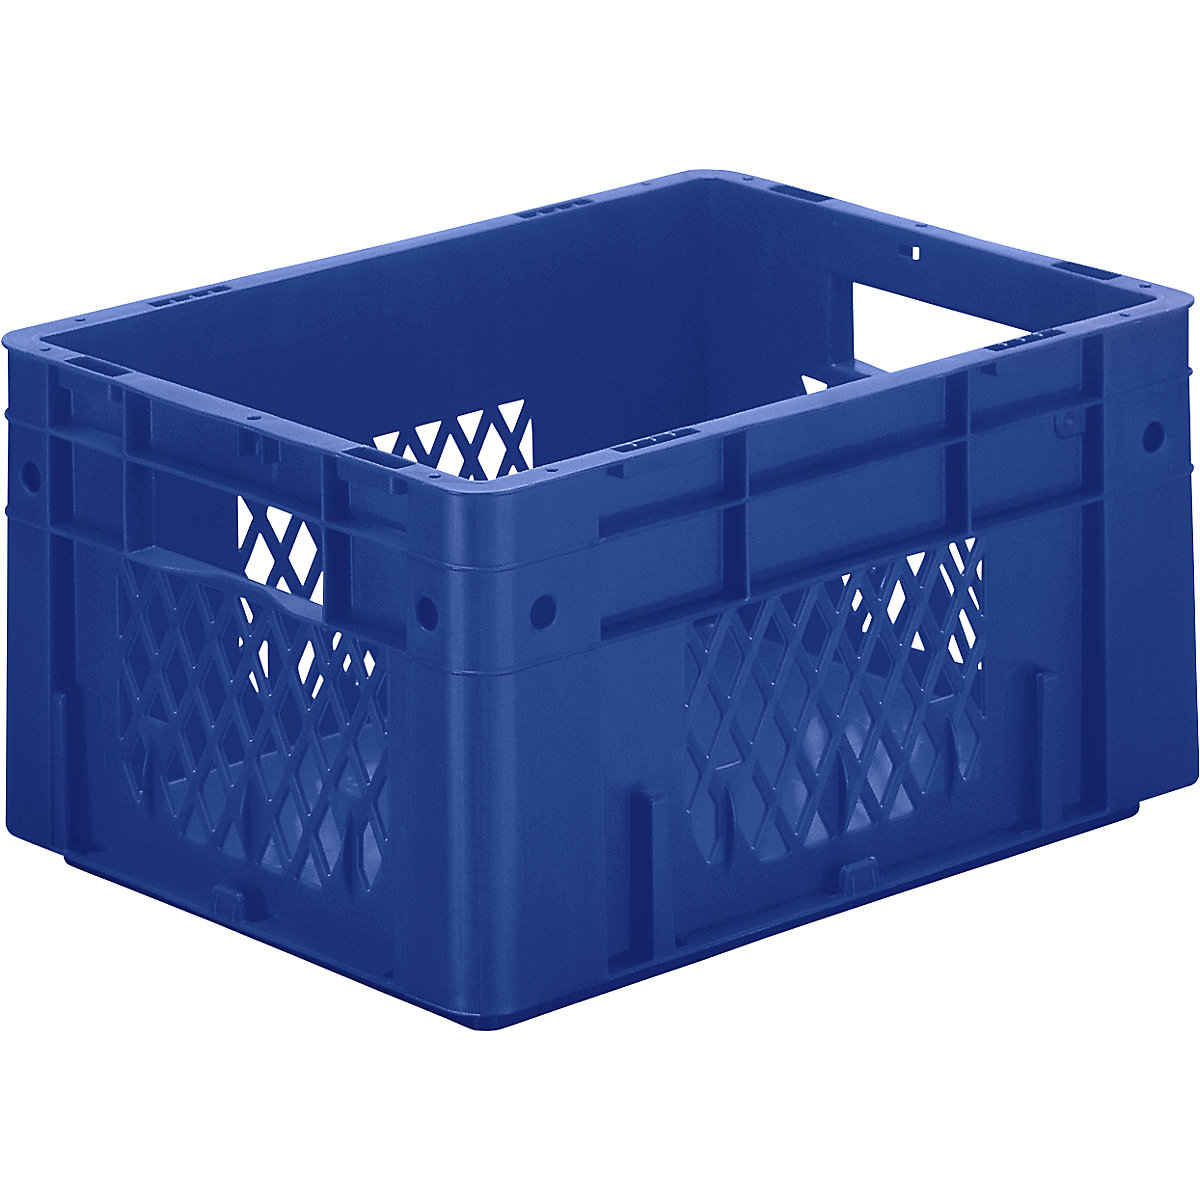 Schwerlast-Euro-Behälter, Polypropylen, Volumen 17,5 l, LxBxH 400 x 300 x 210 mm, Wände durchbrochen, Boden geschlossen, blau, VE 4 Stk-4